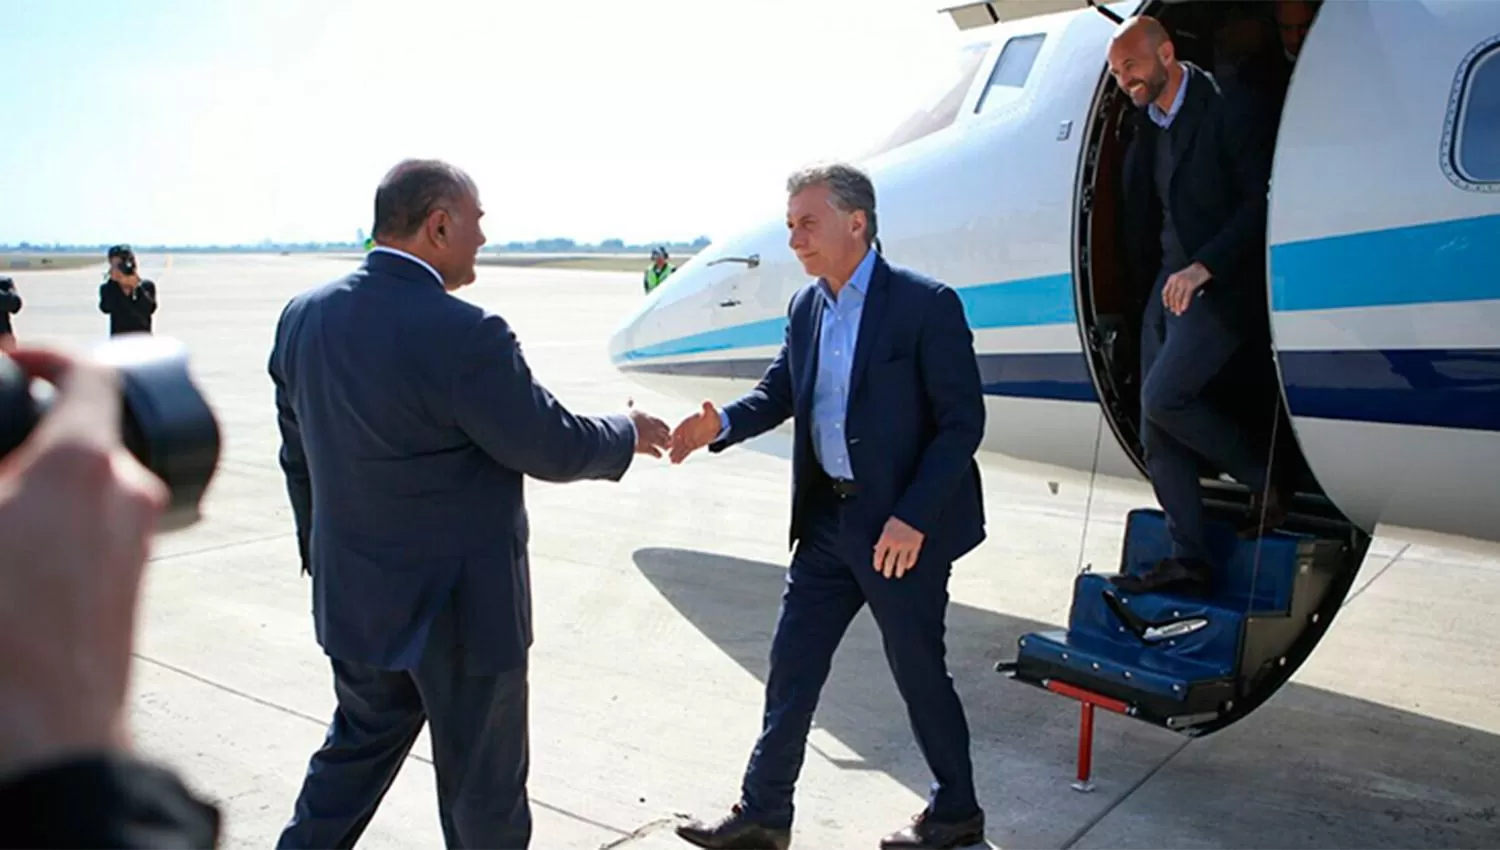 ENCUENTRO. Manzur recibe a Macri en el aeropuerto Benjamín Matienzo. ARCHIVO